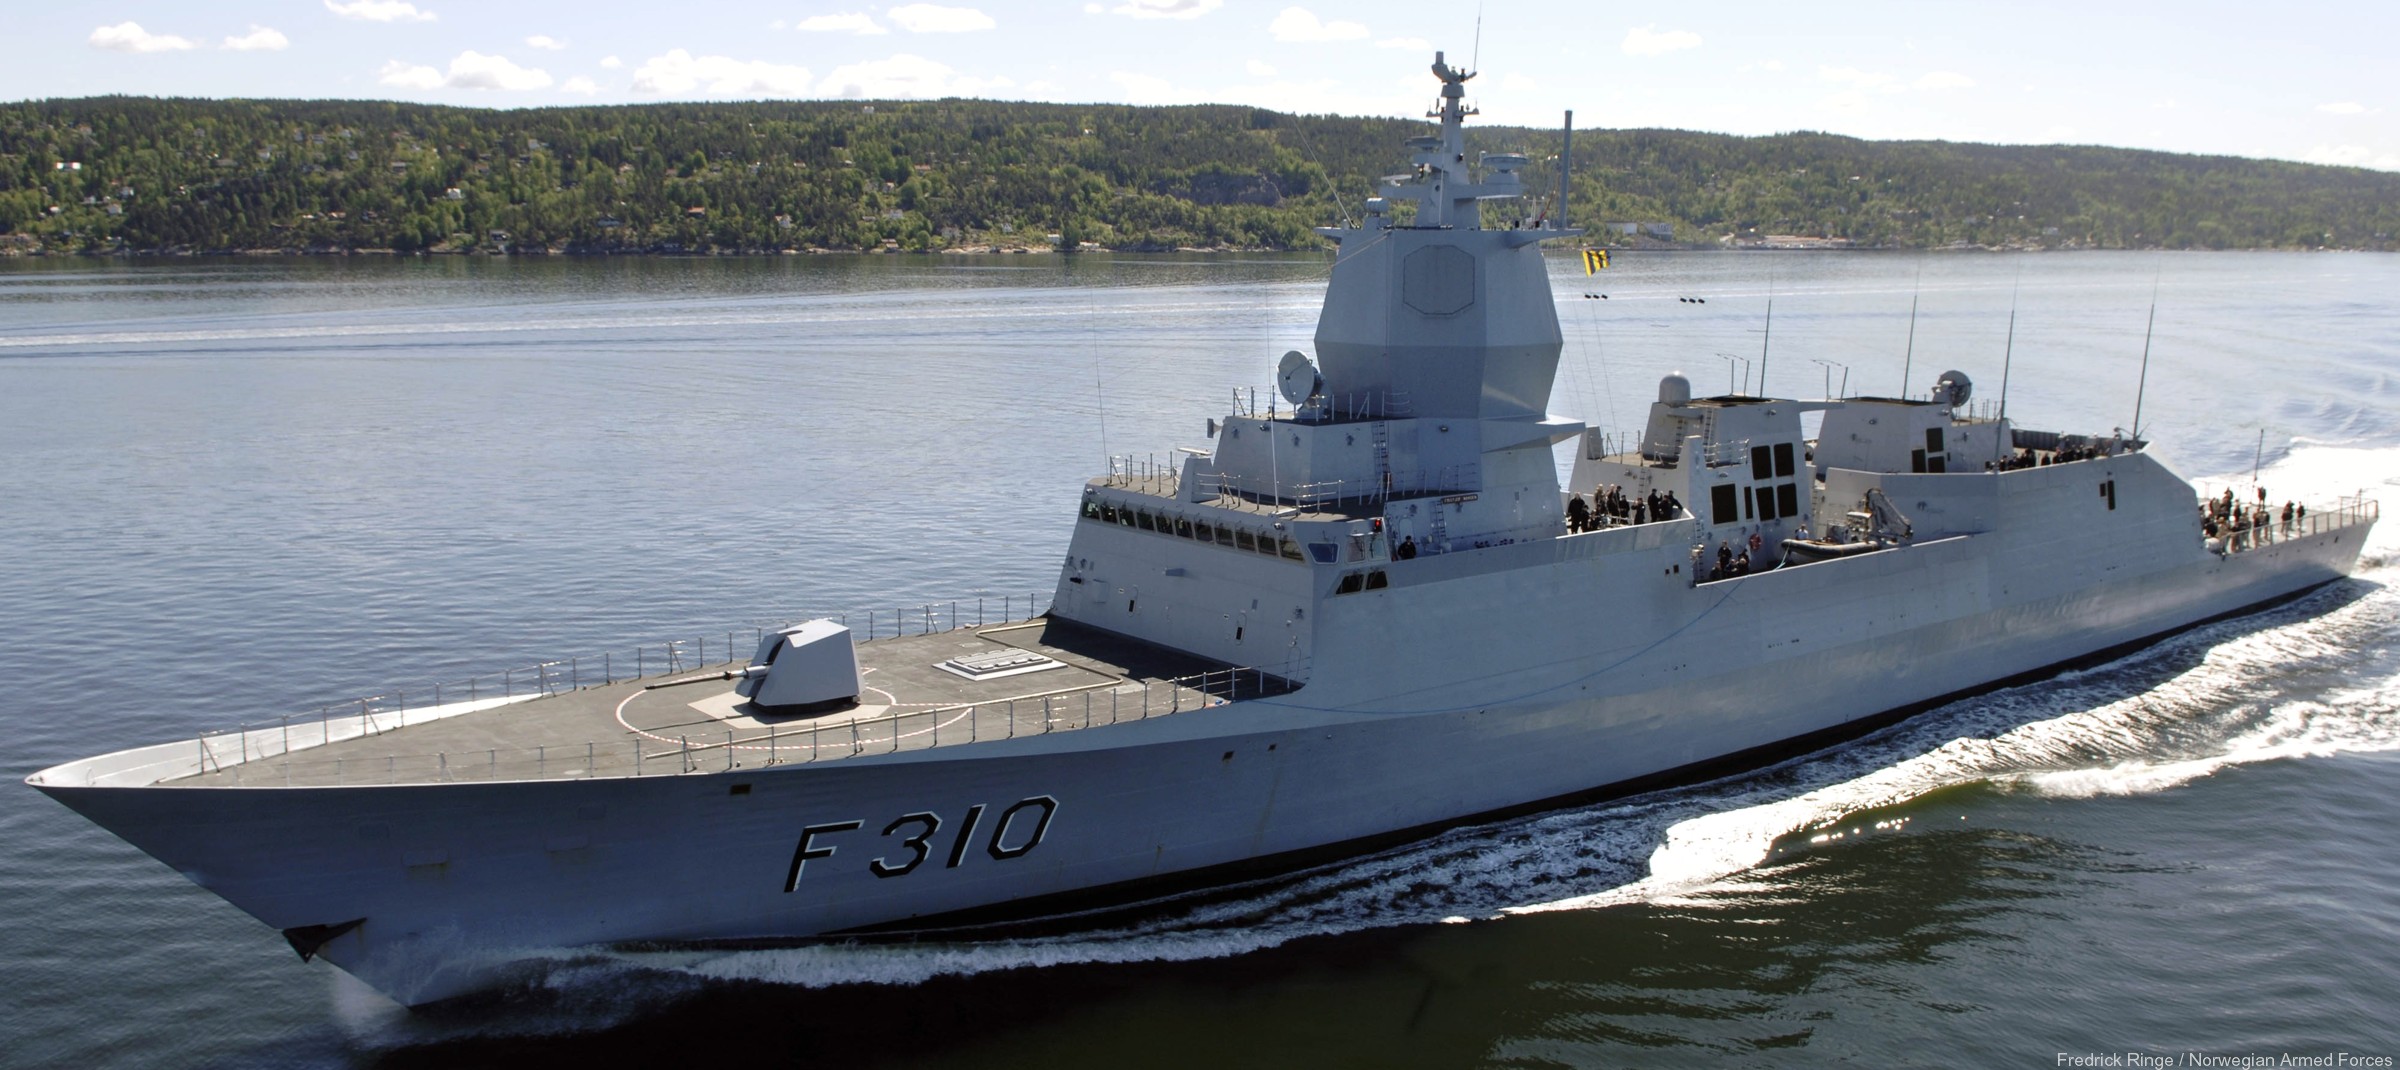 f-310 fridtjof nansen hnoms knm frigate royal norwegian navy sjoforsvaret 73